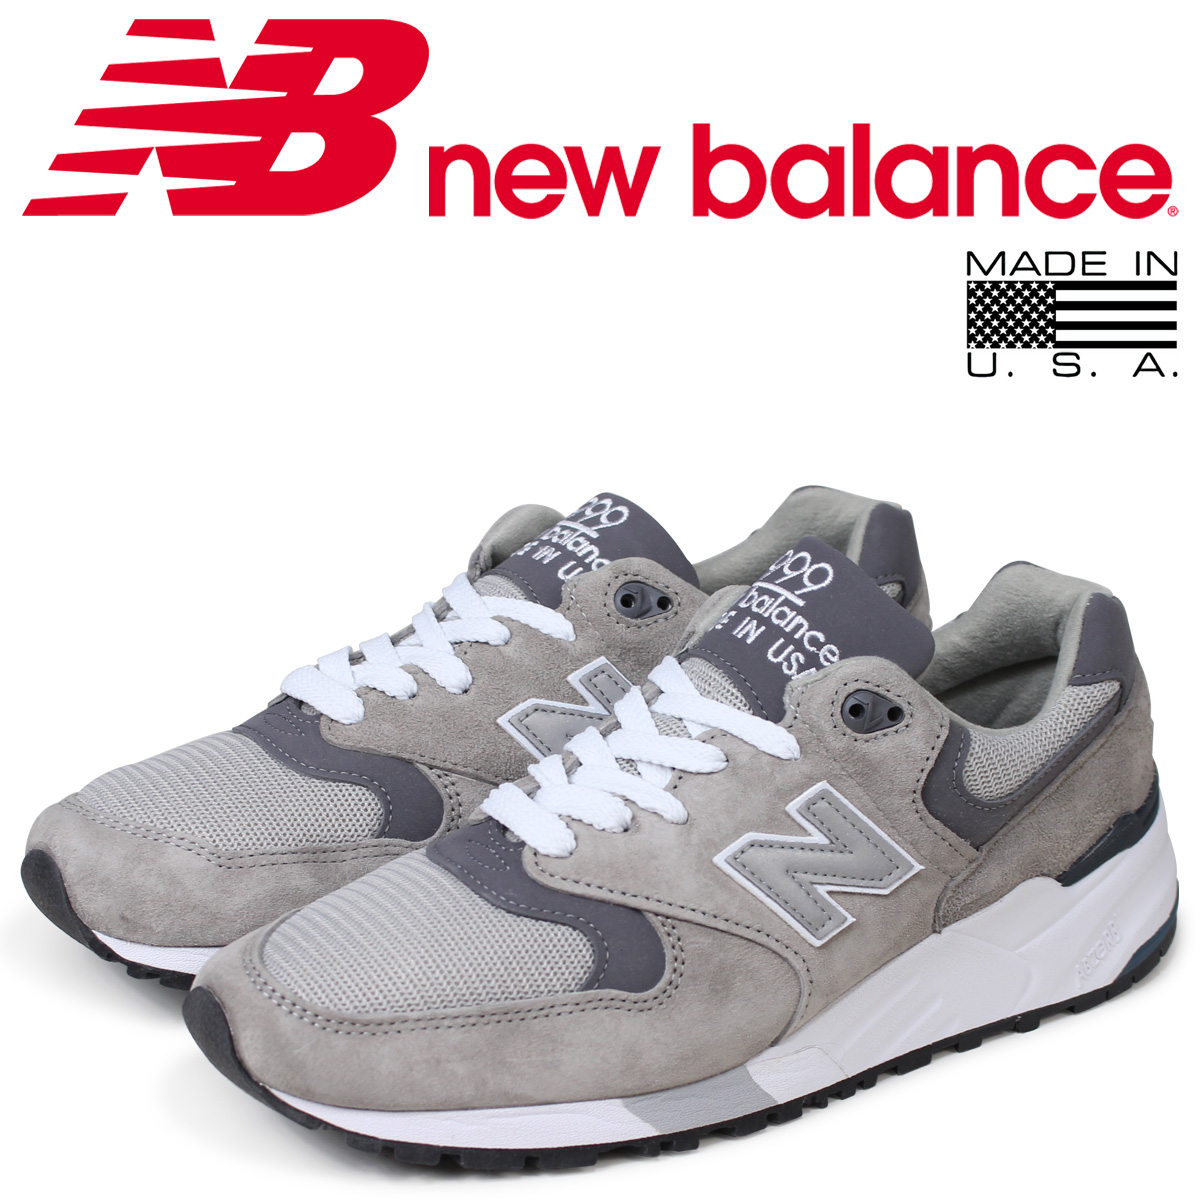 new balance shoes shop online